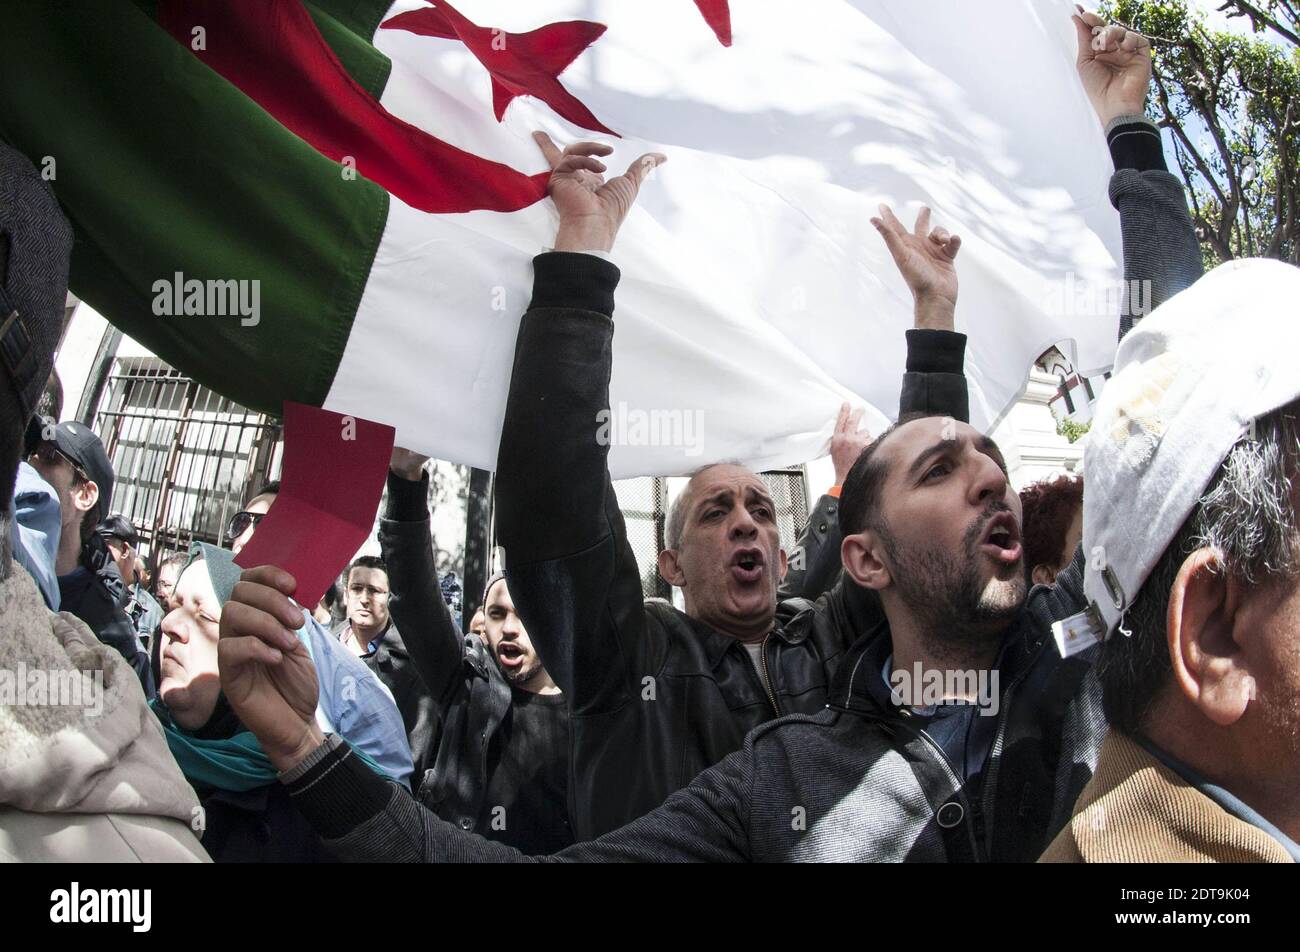 Los partidarios argelinos de un movimiento llamado Barakat (que significa en árabe "eso es suficiente"), que hace campaña por un nuevo liderazgo en Argelia, manifiestan sosteniendo pancartas y gritando consignas contra el actual presidente argelino, Bouteflika Abdelaziz, que se celebrará por cuarto término en las elecciones del 17 de abril, fuera de la escuela central del centro de Argel el 27 de marzo. 2014. La decisión del líder de 77 años de edad de buscar la reelección a pesar de graves problemas de salud, que lo confinaron a un hospital en París durante tres meses el año pasado, ha hecho que se hayan criticado mucho no solo en las filas de la oposición, sino también en algunas dentro del régimen Foto de stock